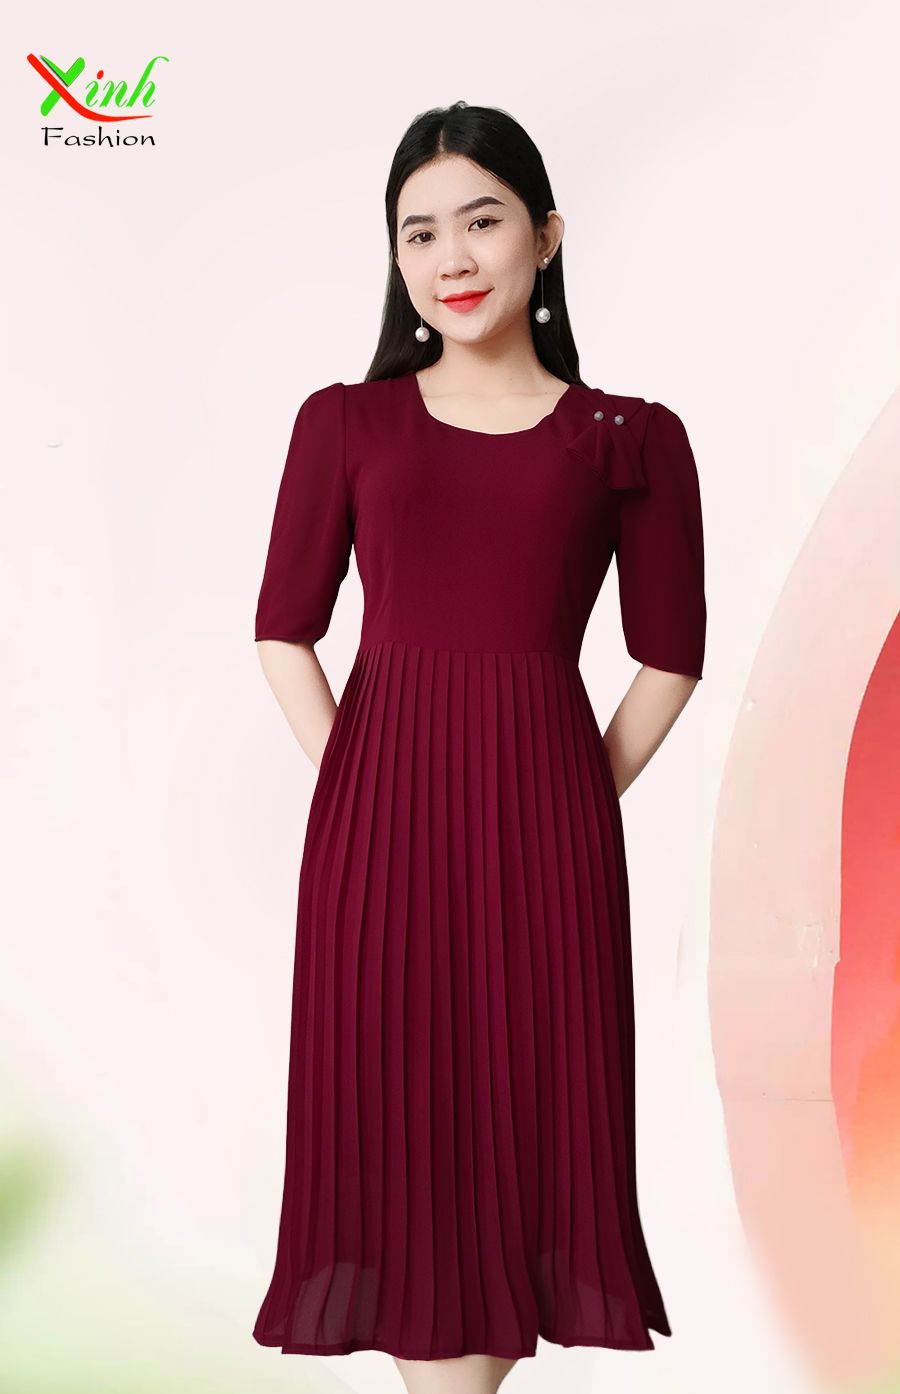 Mới) Mã A7229 Giá 1390K: Váy Đầm Xòe Liền Thân Nữ Zhout Hàng Mùa Xuân Thu  Đông Phong Cách Hàn Quốc Thời Trang Nữ Chất Liệu G04 Sản Phẩm Mới, (Miễn Phí